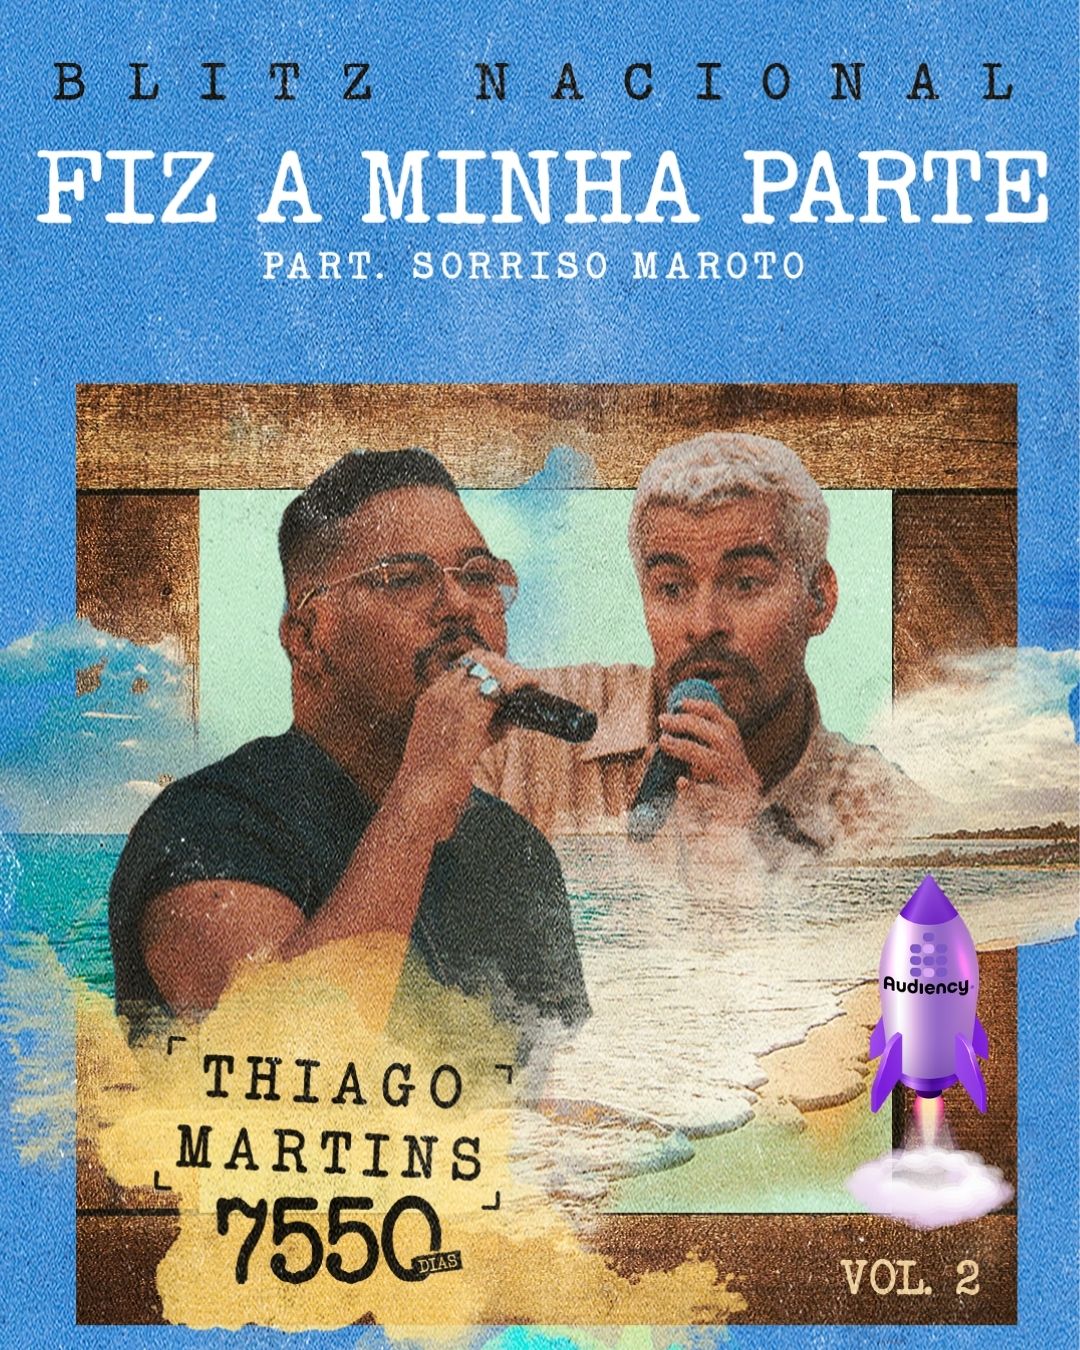 Thiago Martins Blitz da música "Fiz Minha Parte" Audiency